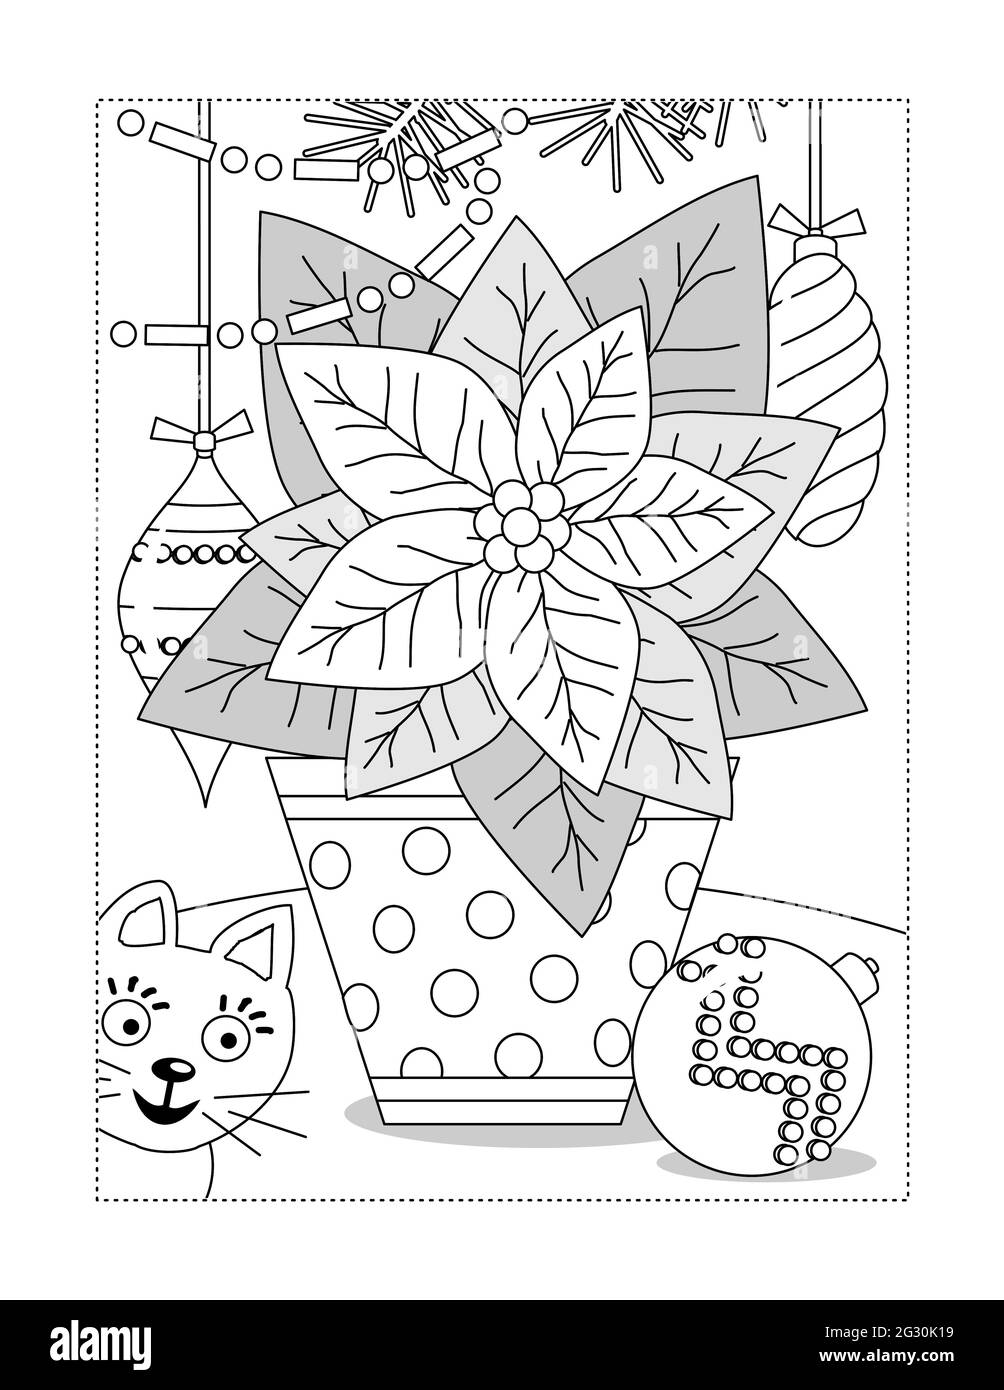 Poinsettia dans une page de coloriage en pot à pois ou illustration en noir et blanc avec chat et ornements Banque D'Images